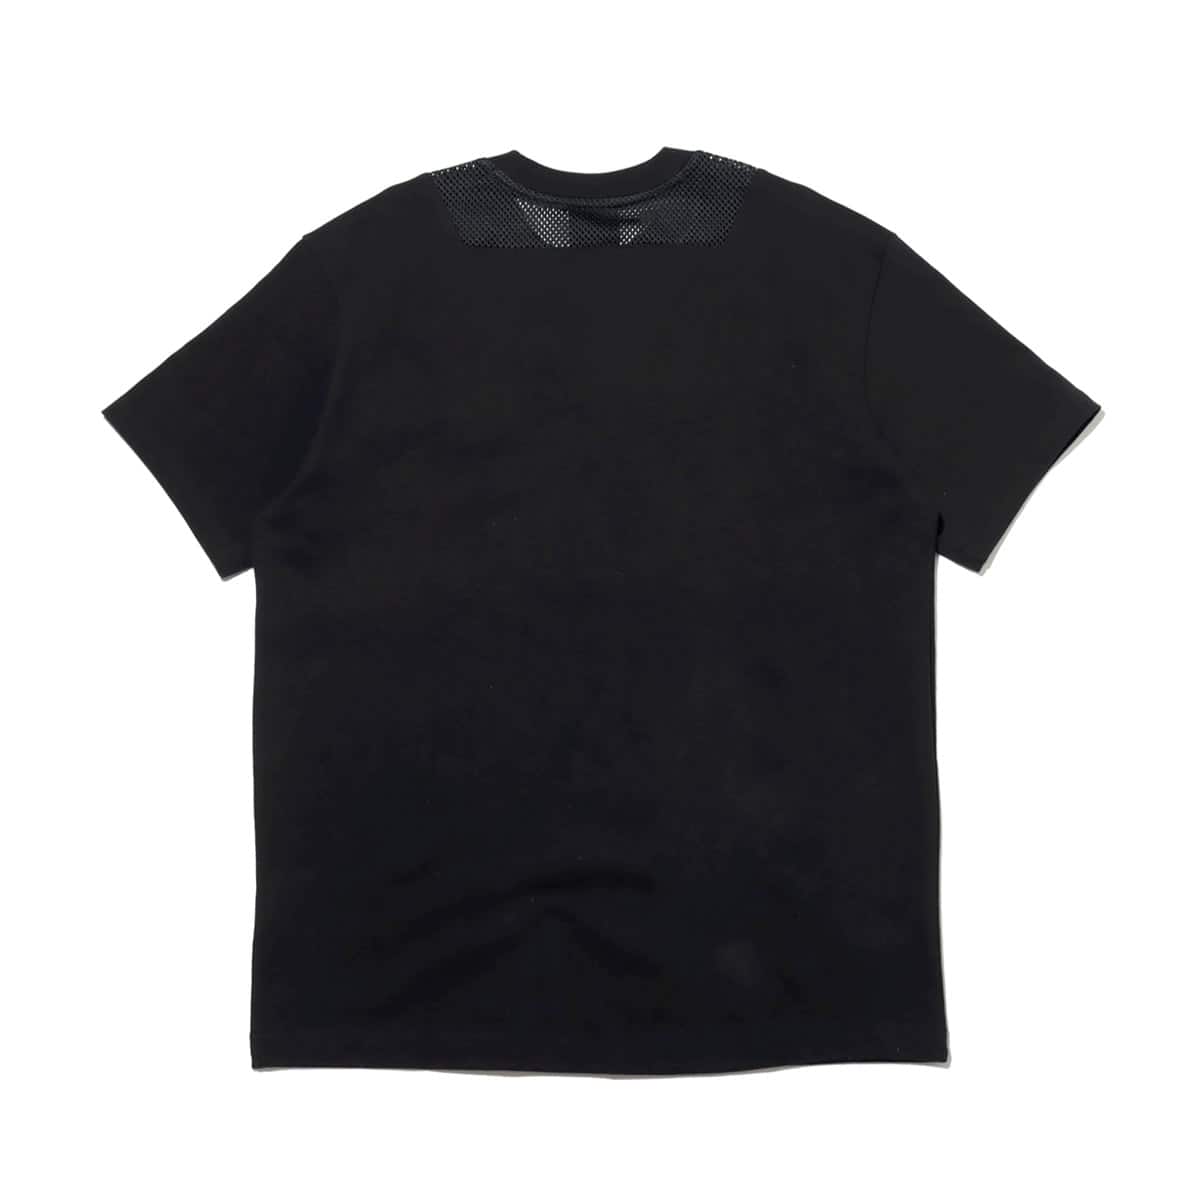 袋から一度も出していませんNIKE M TOKYO シティパック S/S Tシャツ 黒